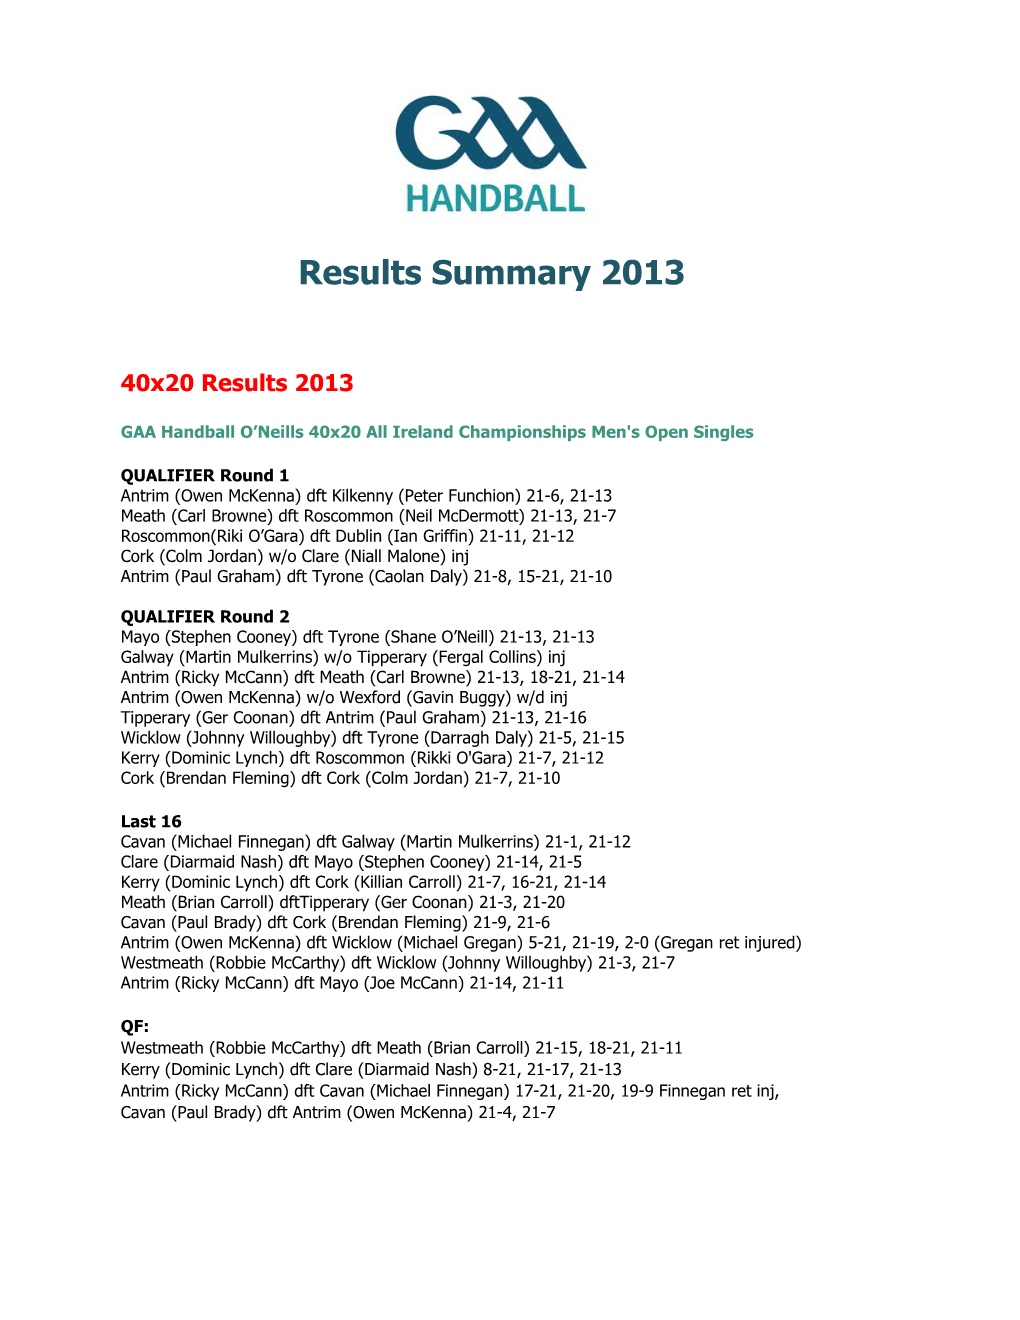 GAA Handball O Neills 40X20 All Ireland Championshipsmen'sopen Singles